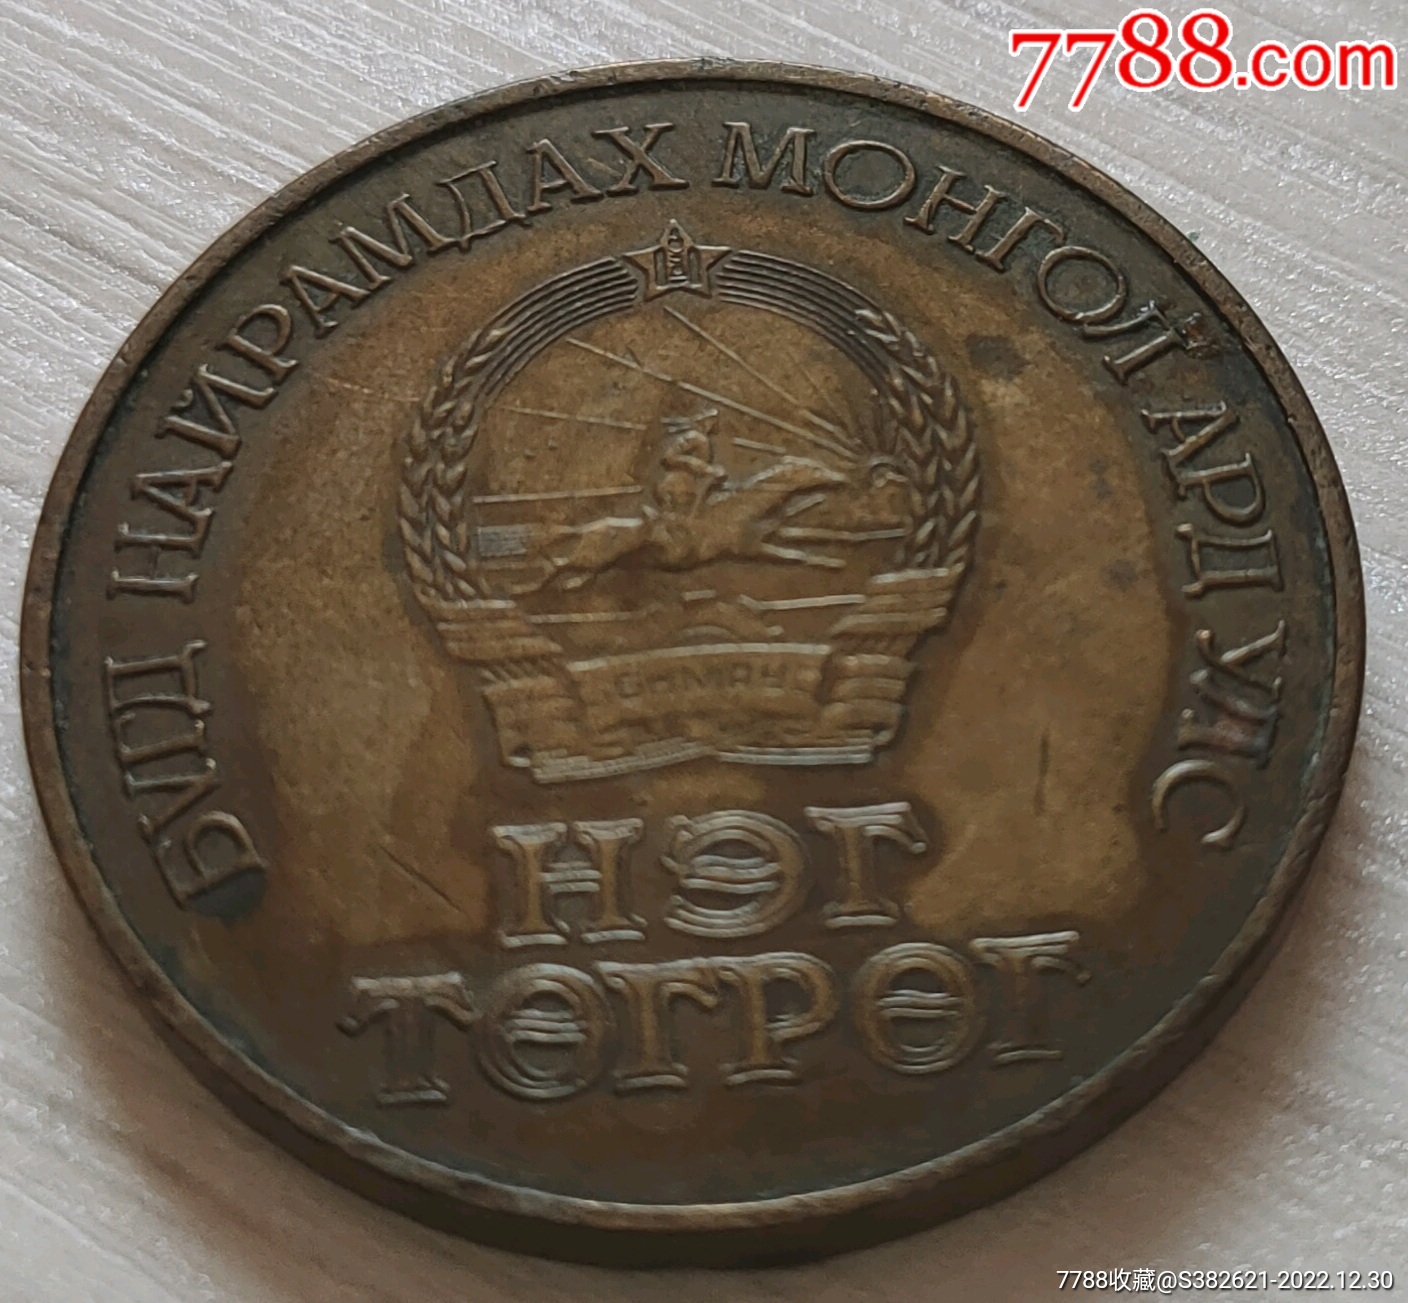 带彩内蒙古自治区纪念币一枚-普通纪念币-7788收藏